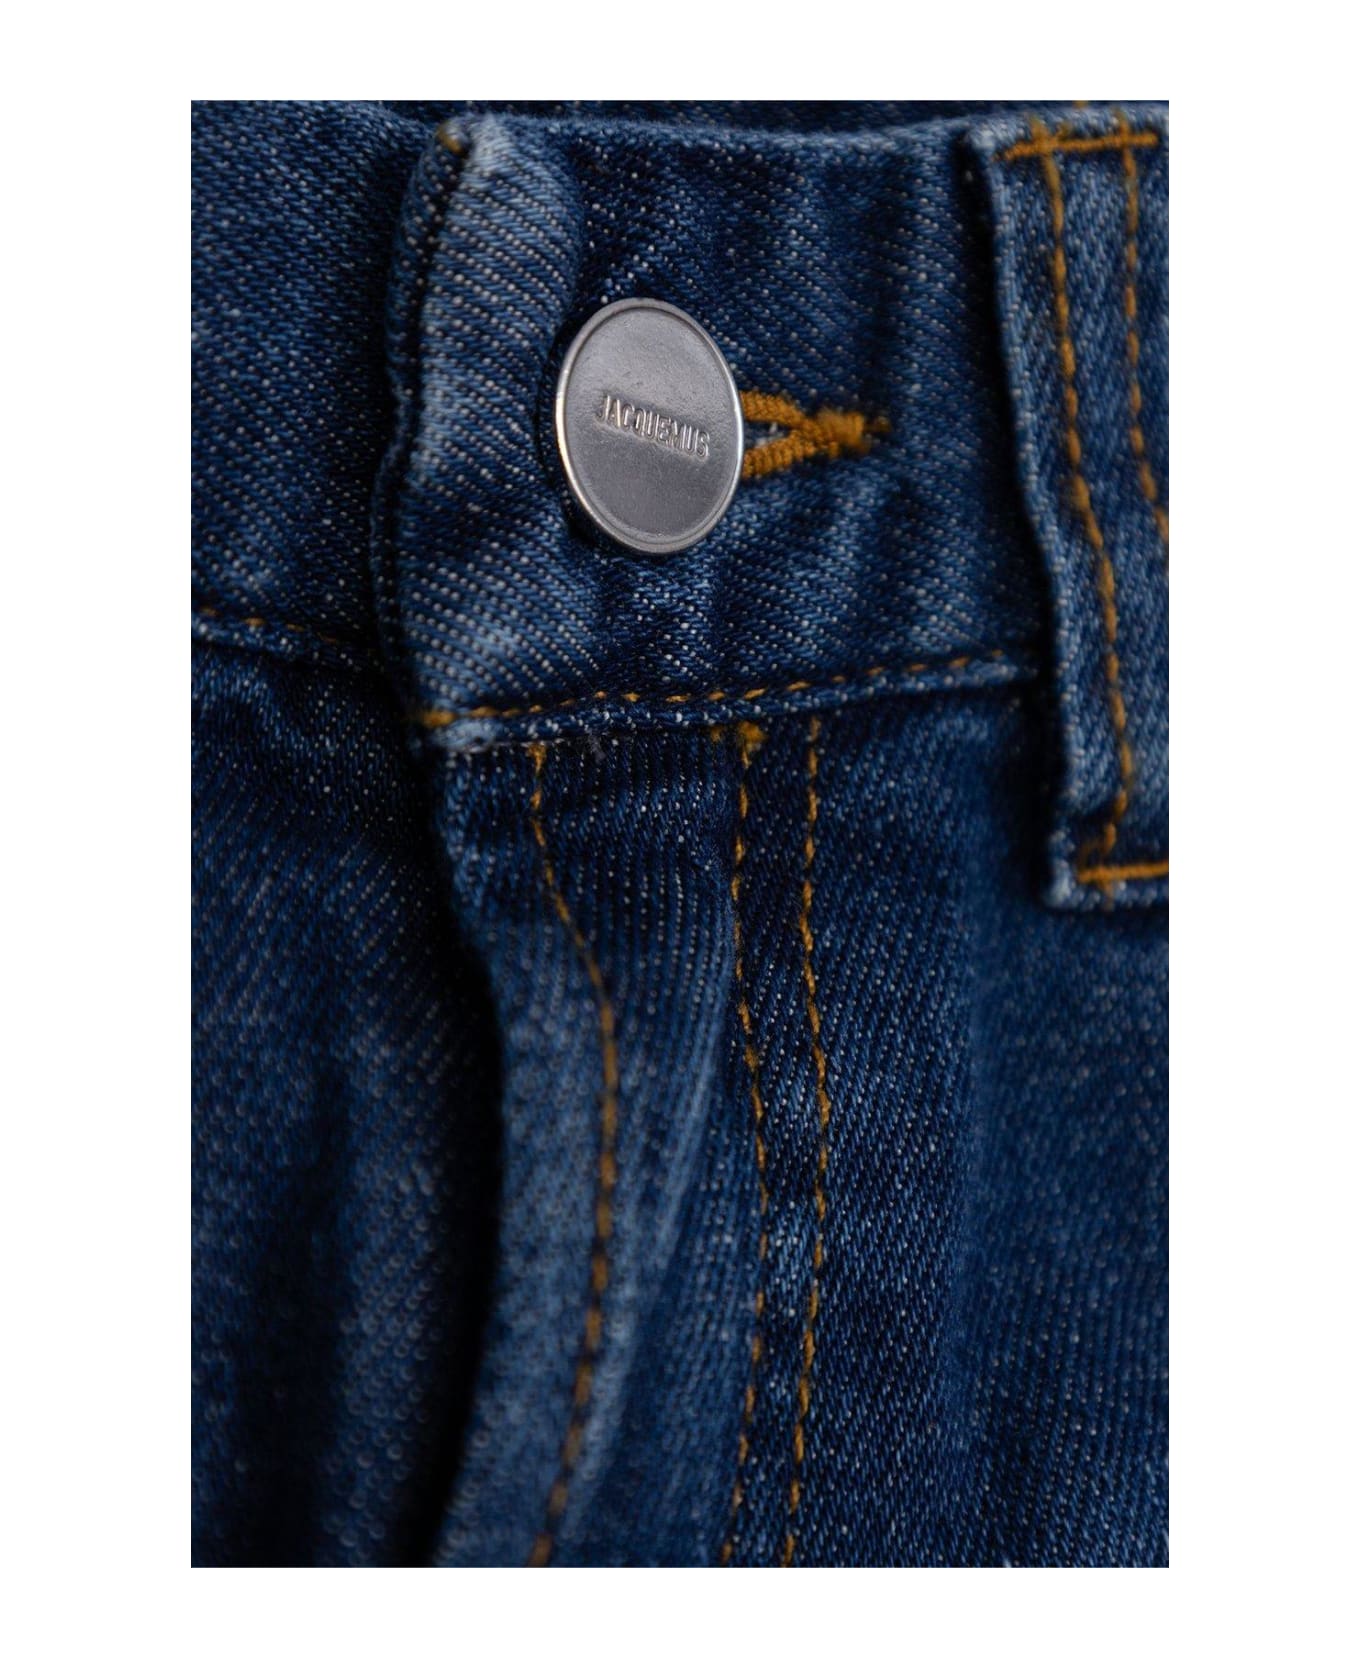 Jacquemus L'enfant Logo Patch Denim Jeans - DENIM BLUE ボトムス